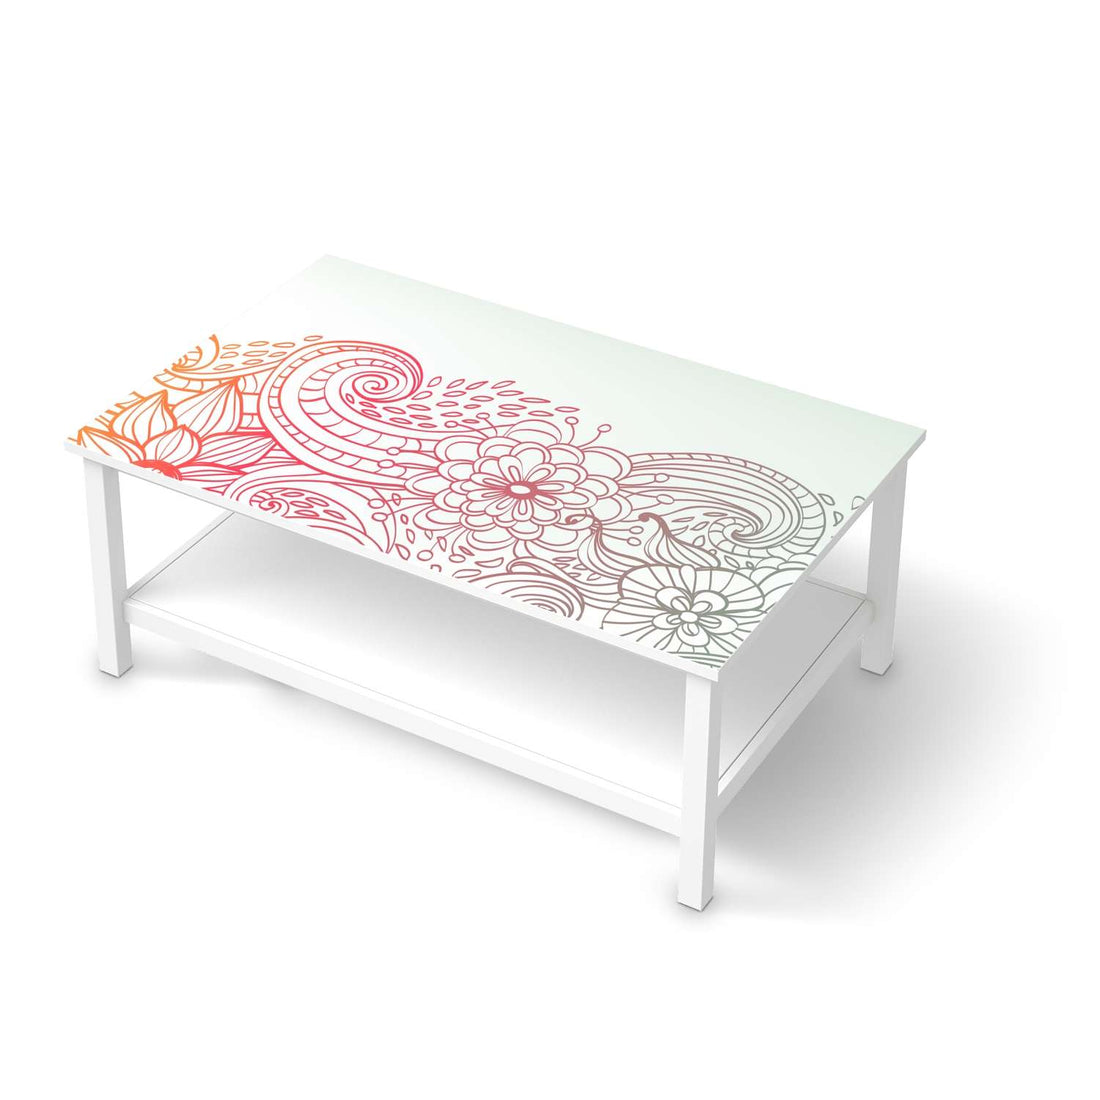 Möbelfolie Floral Doodle - IKEA Hemnes Couchtisch 118x75 cm  - weiss